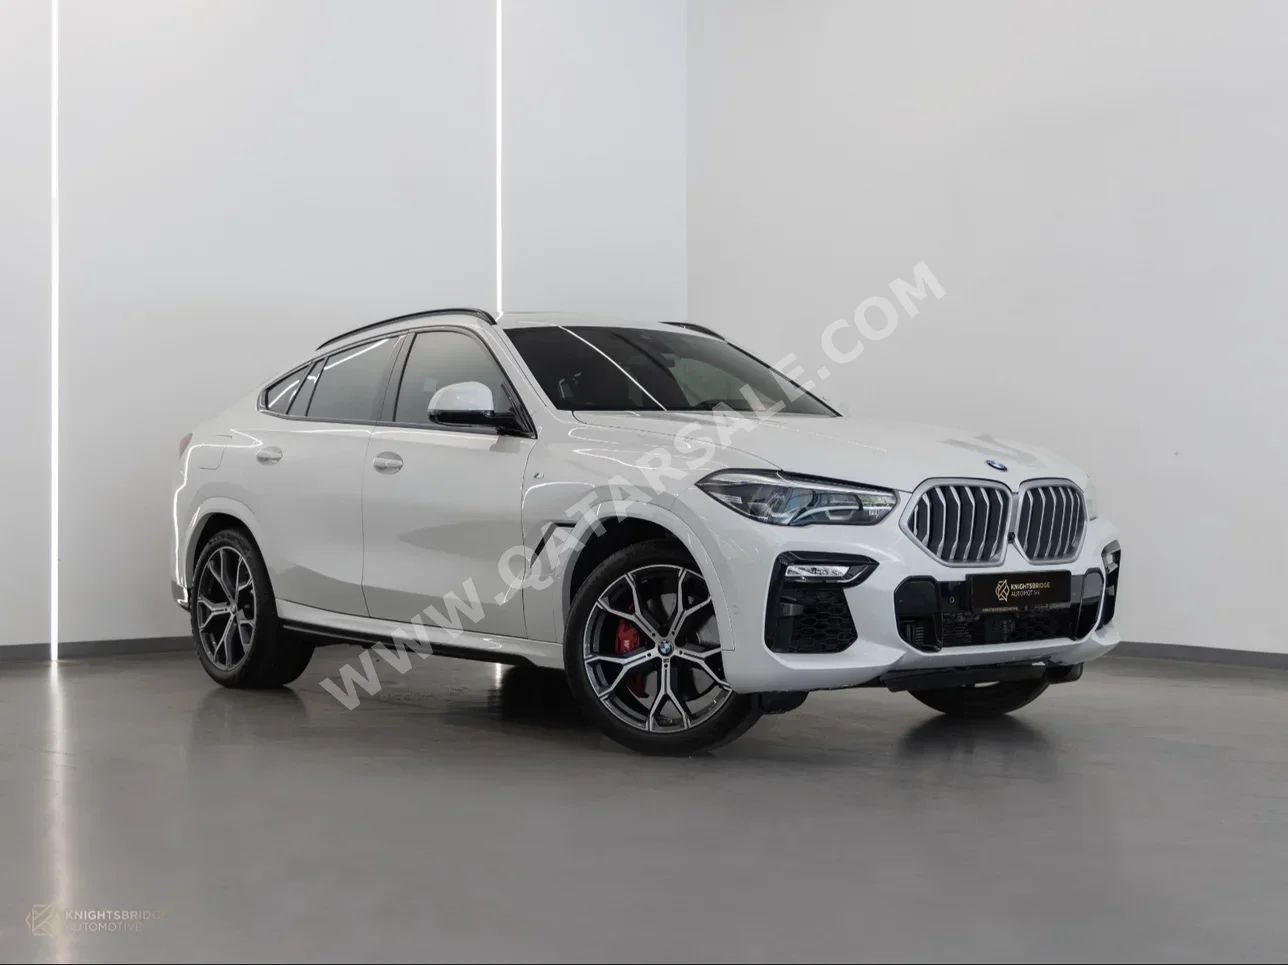  BMW  X-Series  X6  2022  Automatic  43,600 Km  6 Cylinder  Four Wheel Drive (4WD)  SUV  White  With Warranty